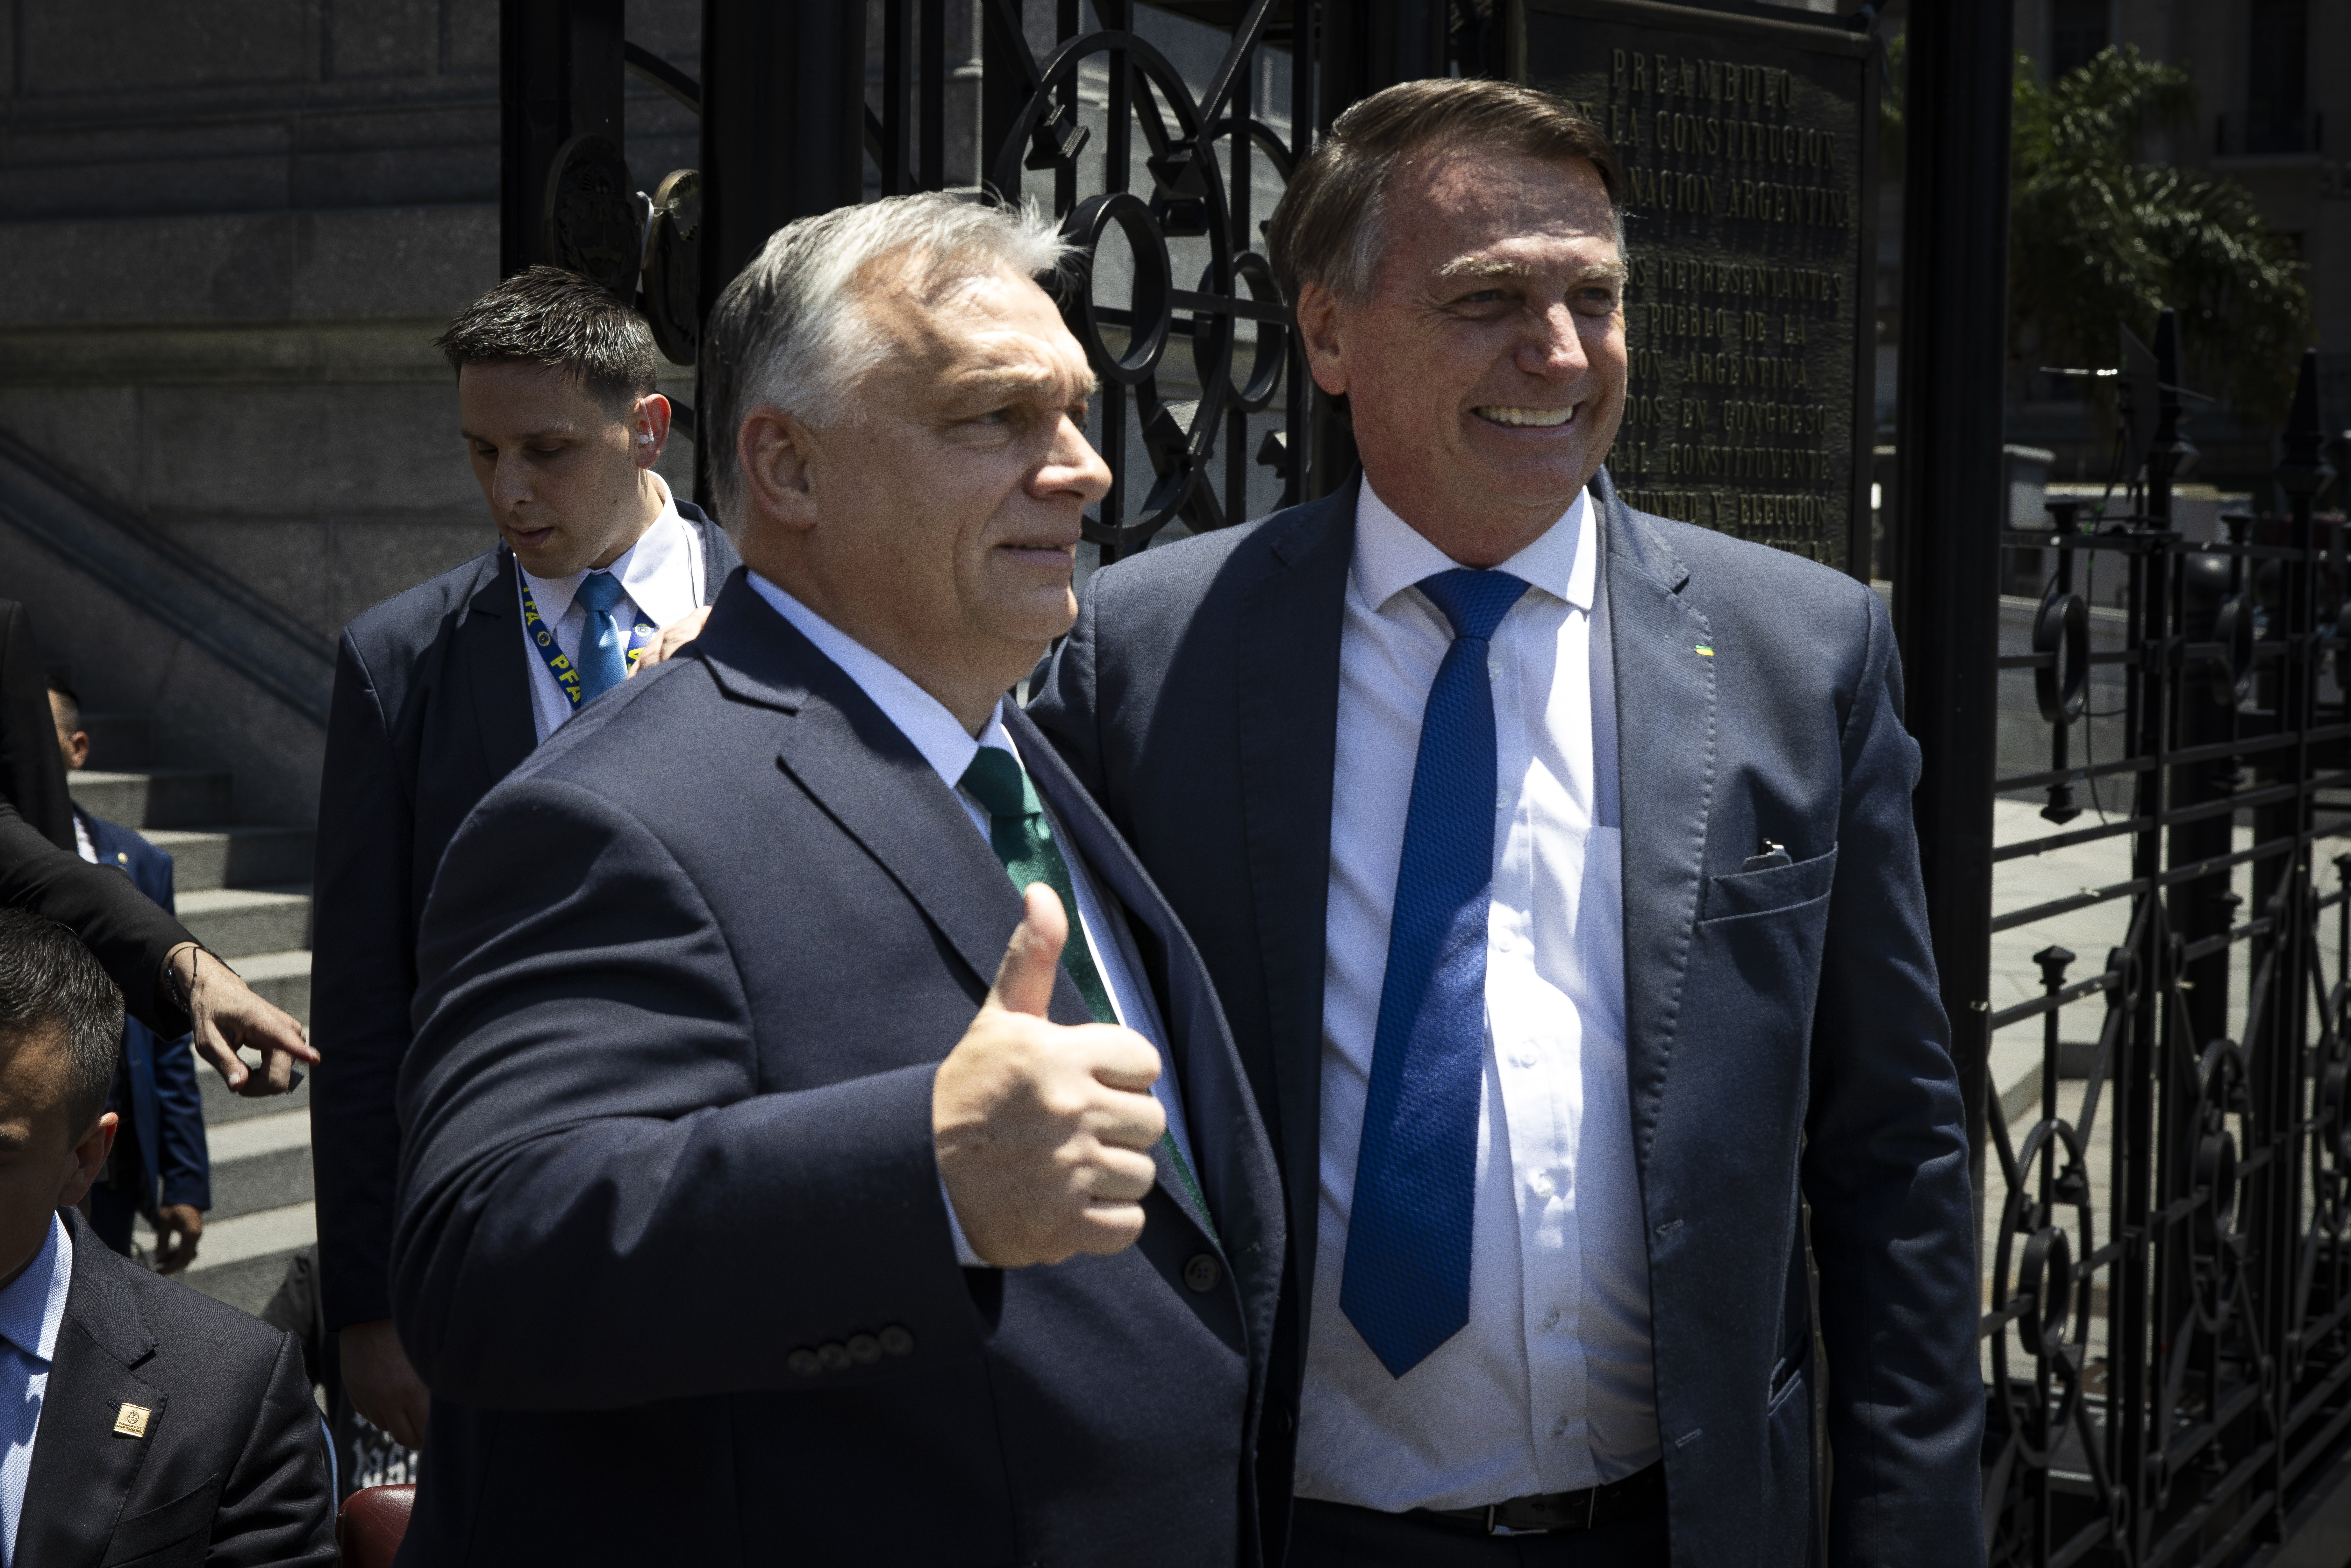 Mit keresett Bolsonaro a magyar nagykövetségen?